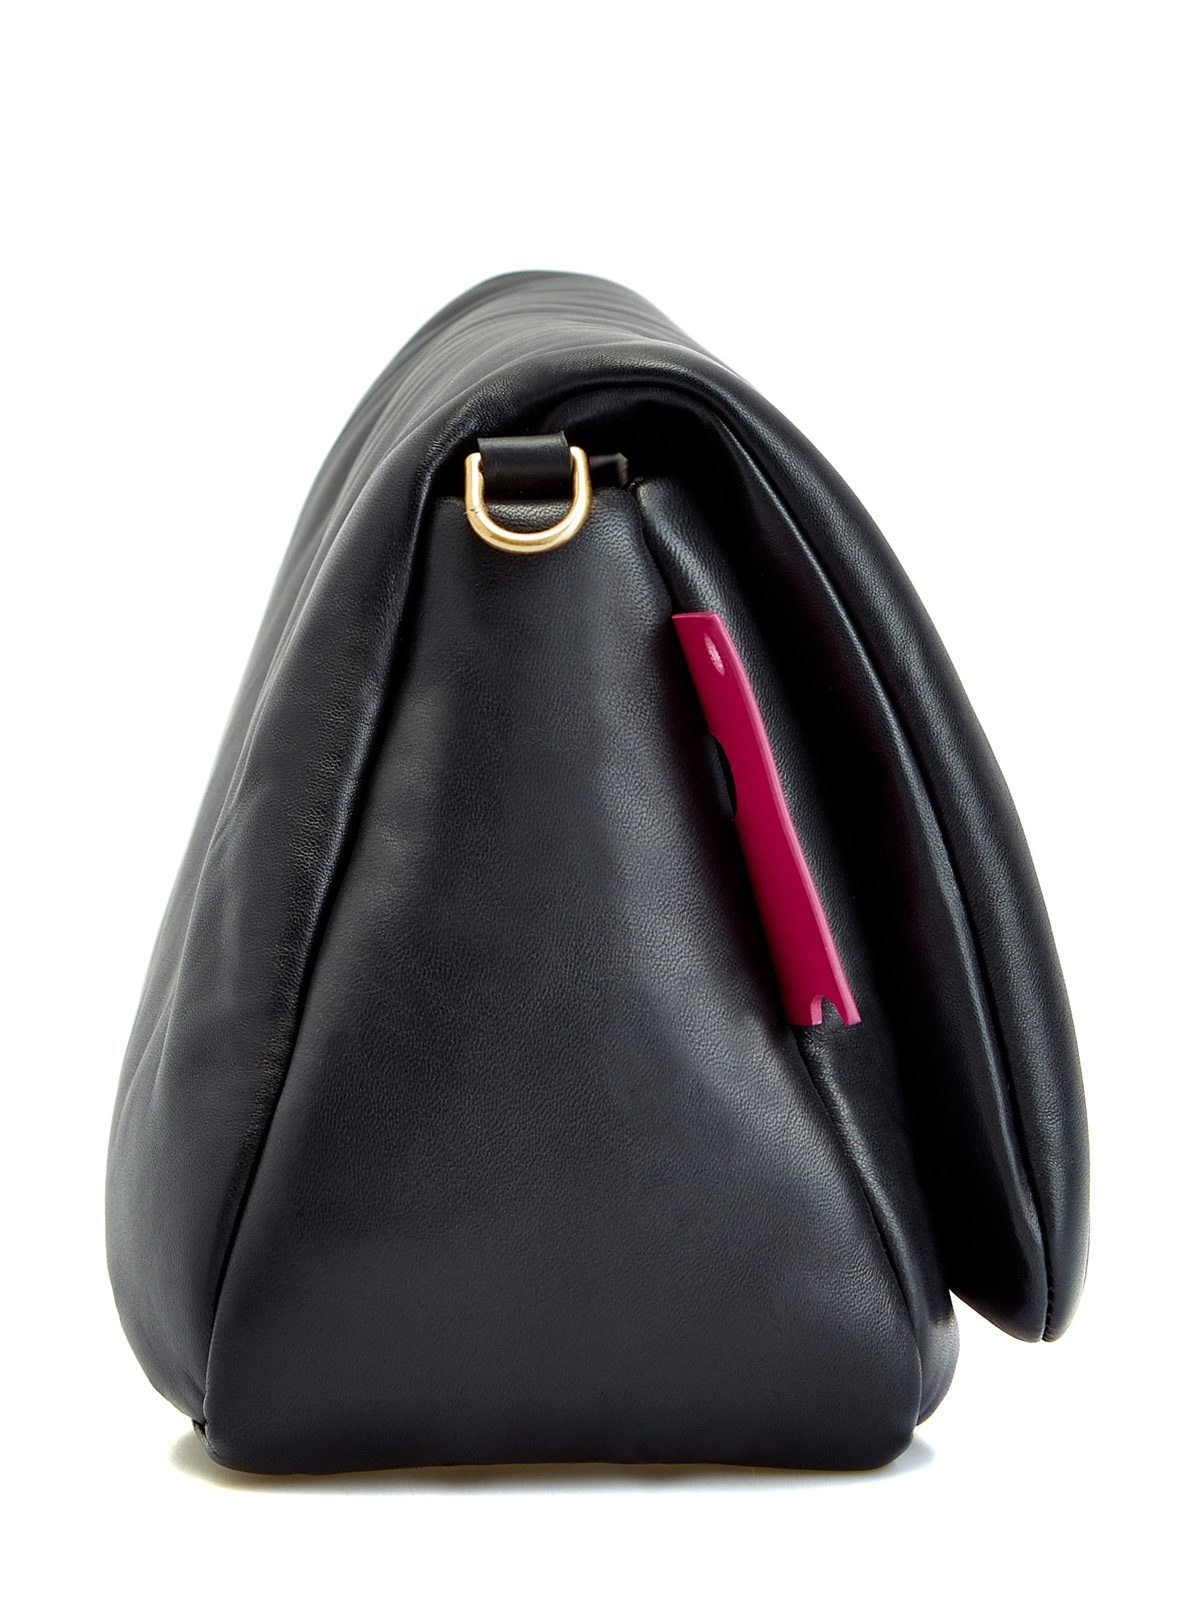 Мягкая сумка Nailed из полированной кожи с литым декором OFF-WHITE, цвет черный, размер 36;36.5;37.5;38;38.5;39;40 - фото 4